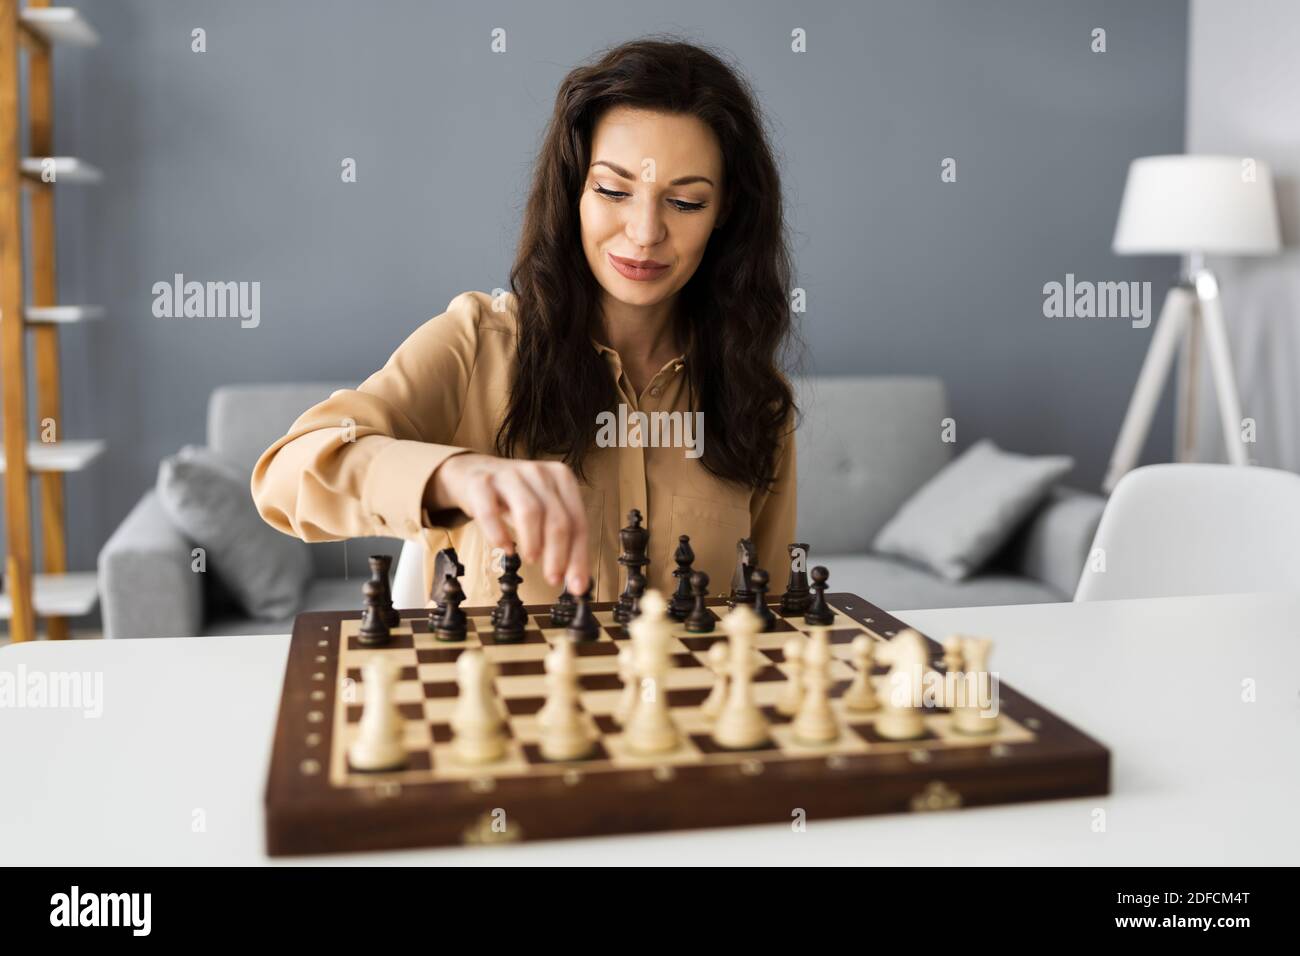 Frau Spielt Schach Online Mit Video-Telefonkonferenz Stockfotografie - Alamy